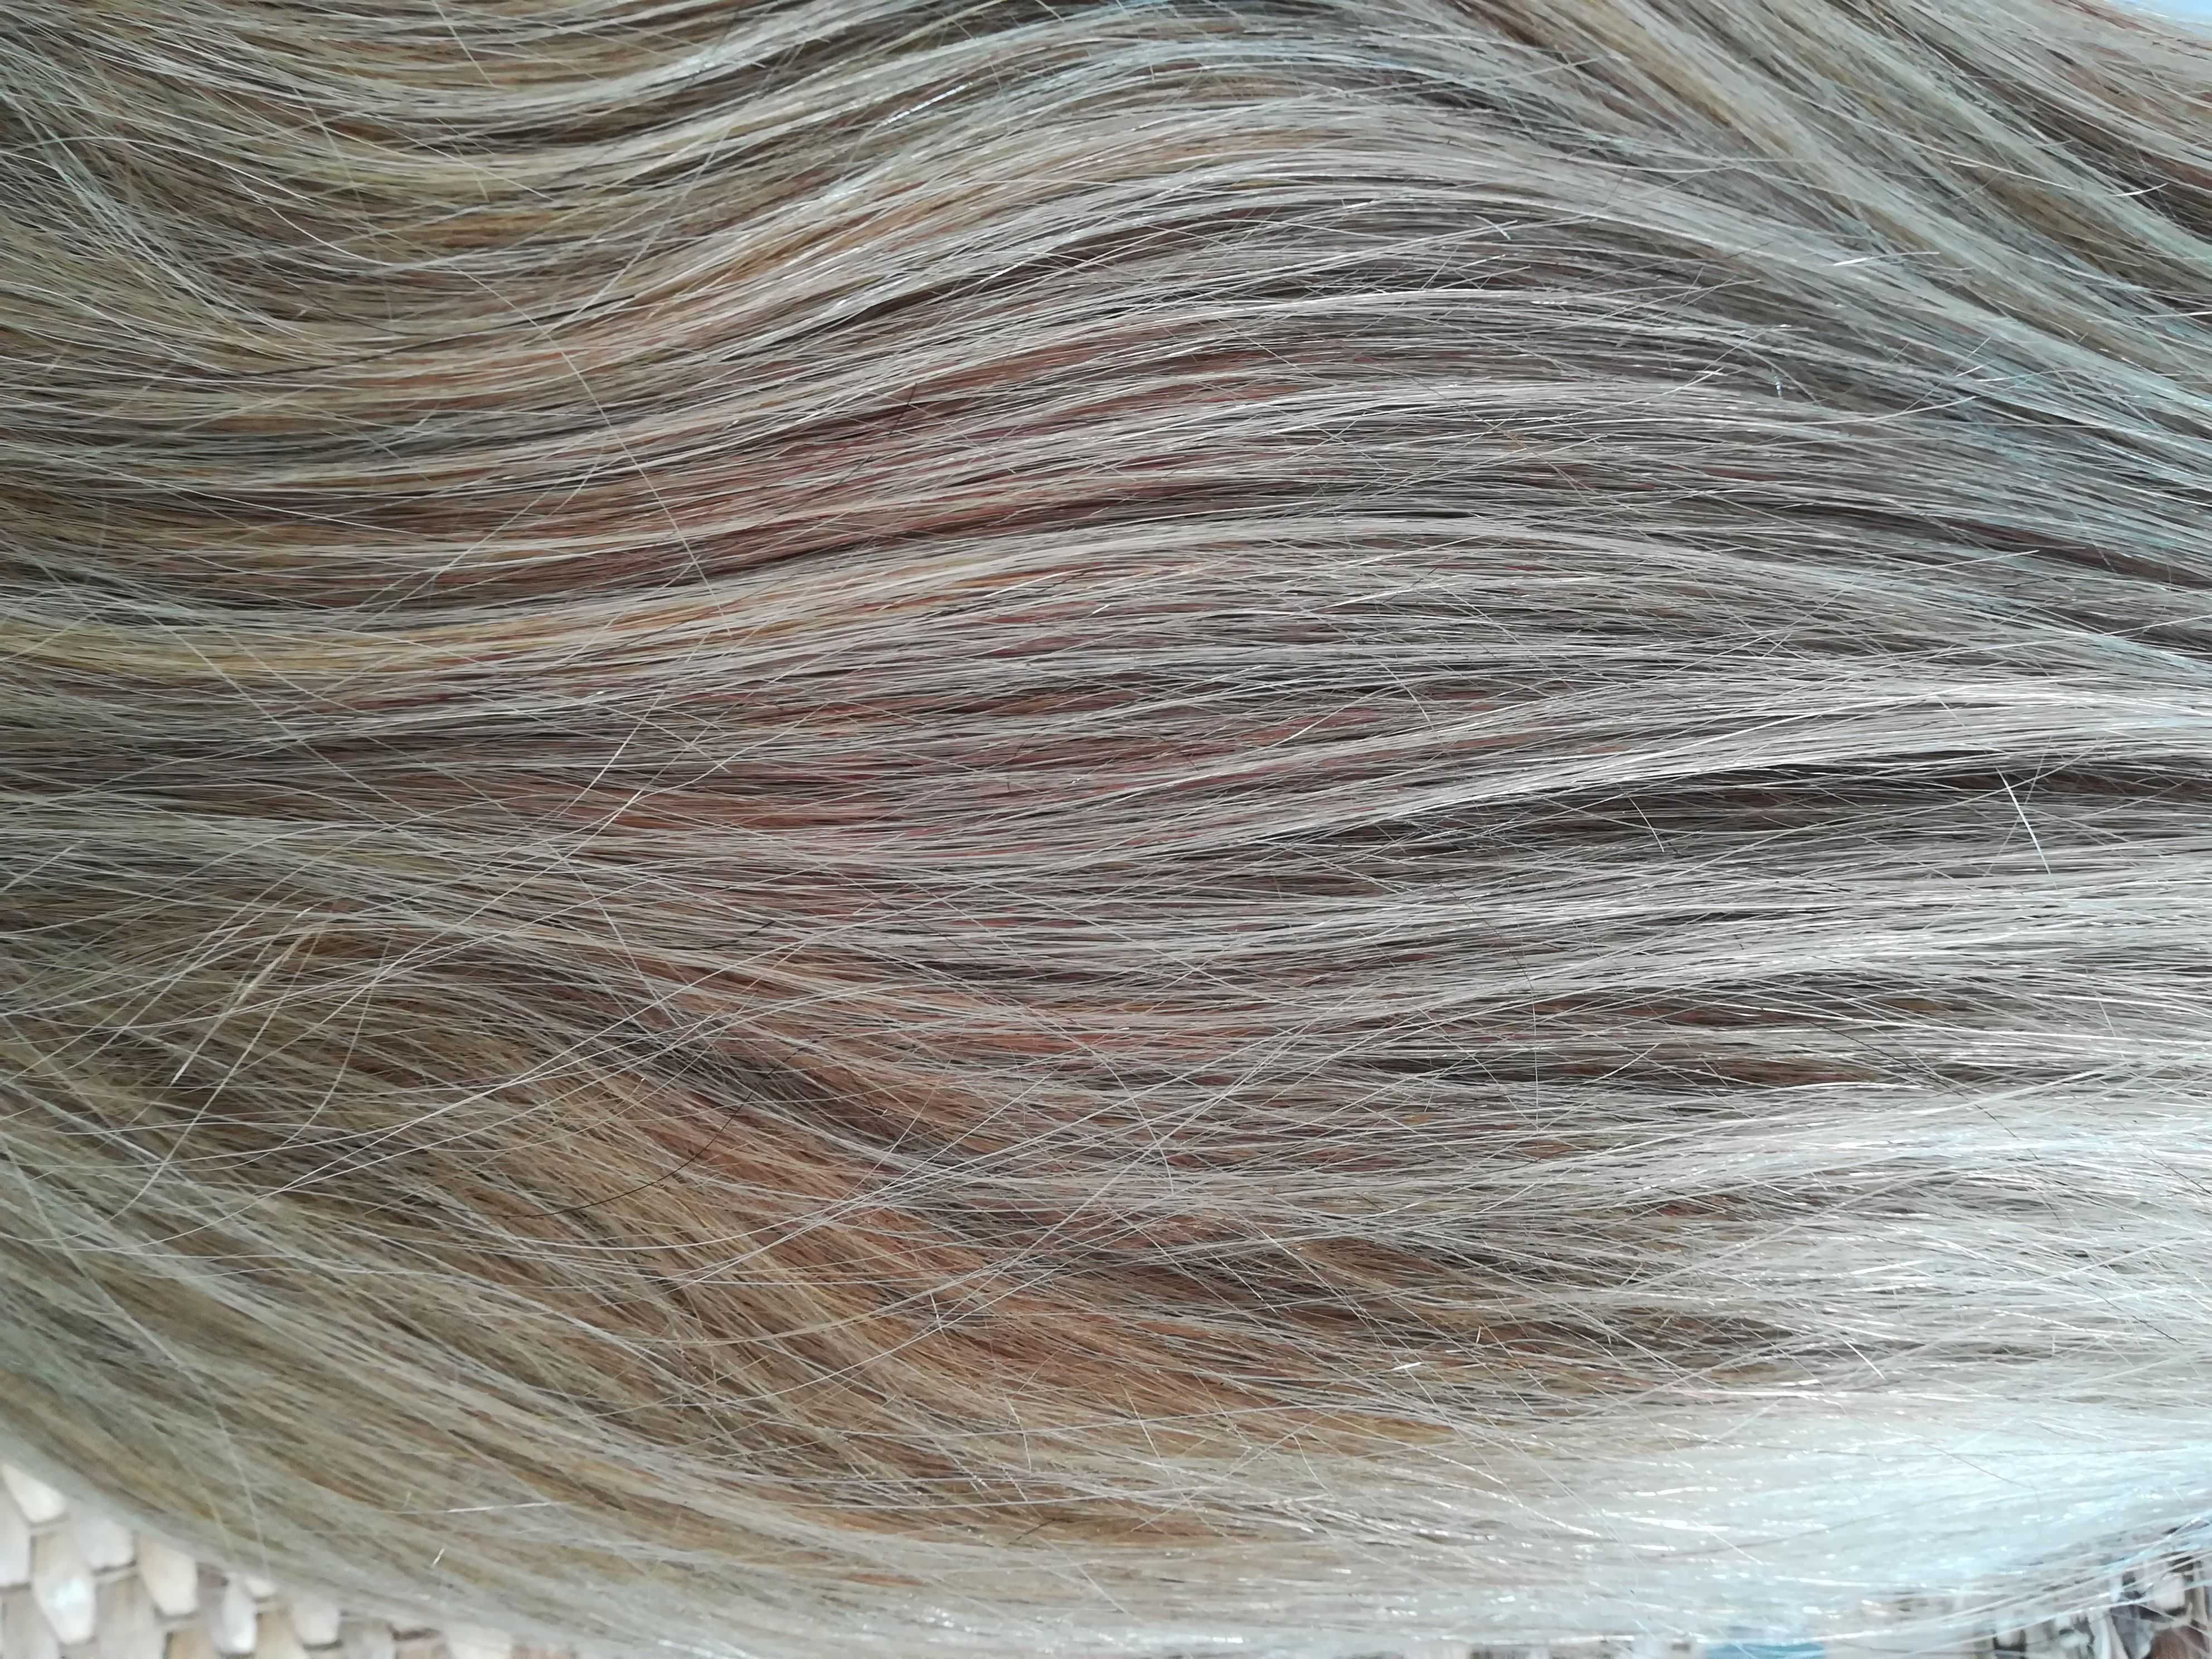 peruka naturalna z włosów ludzkich